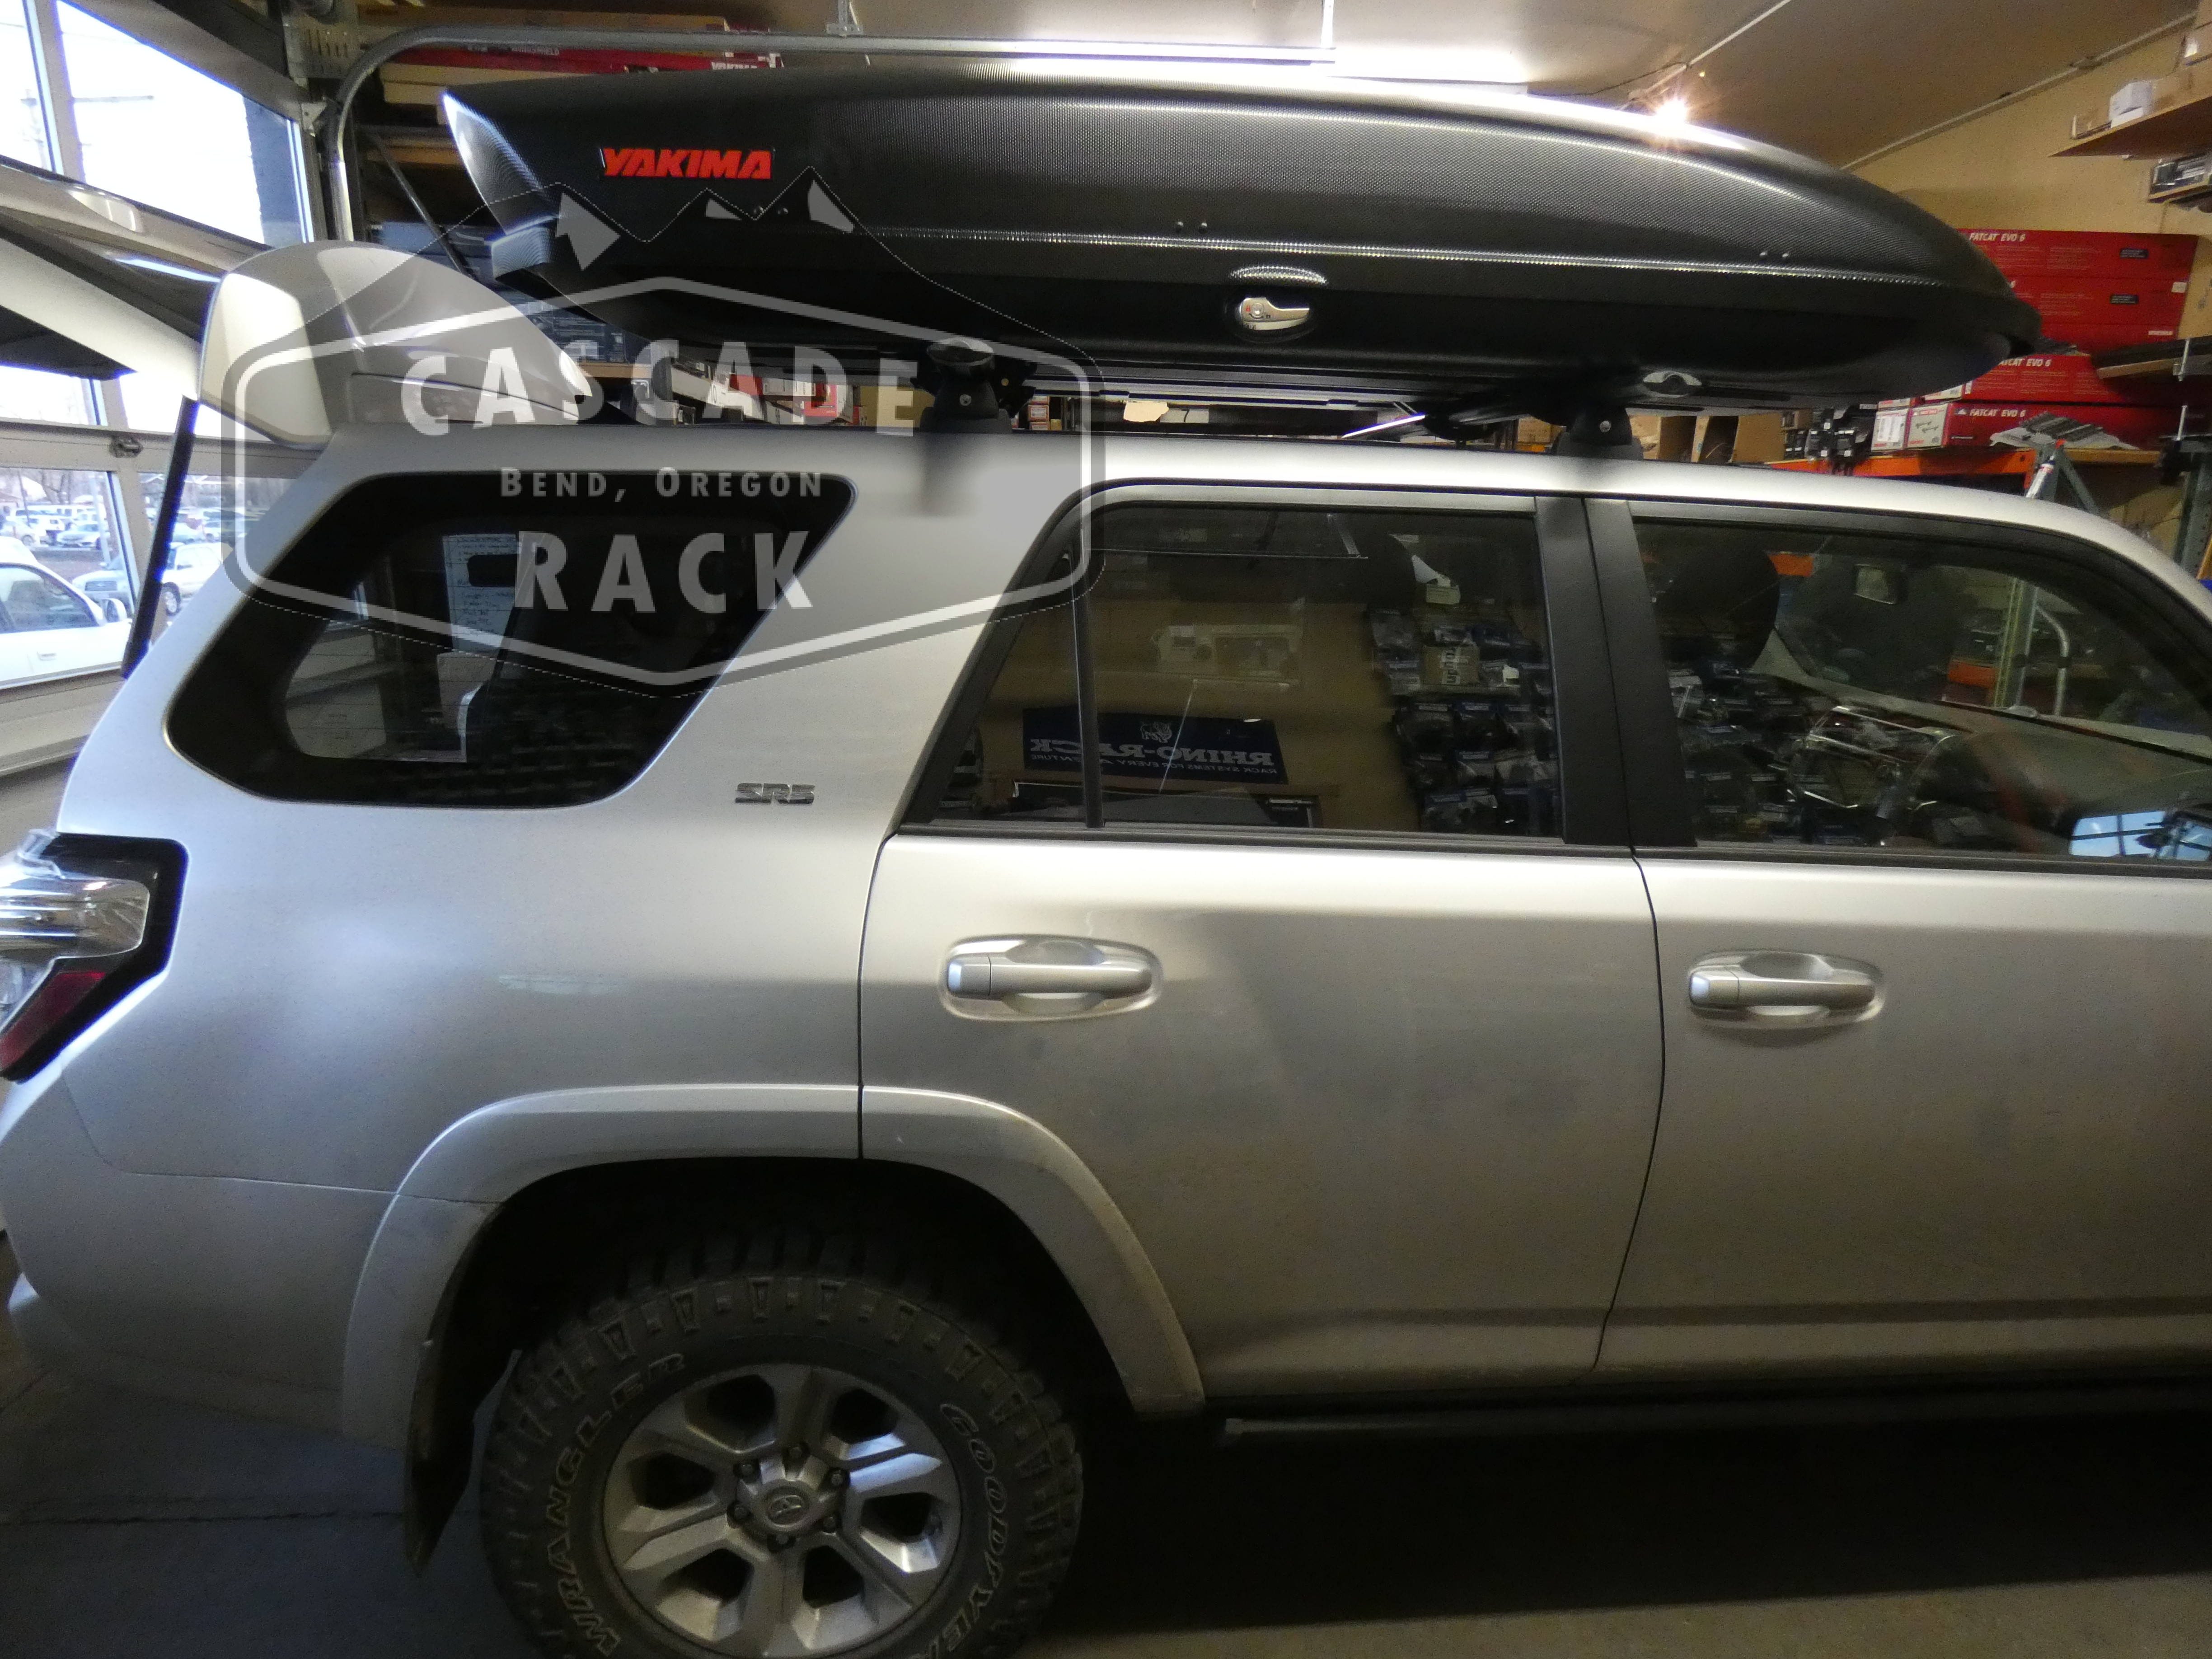 2016 Toyota 4Runner - Custom Base Rack System / Roof Top Cargo Box - Rhino Rack / Yakima